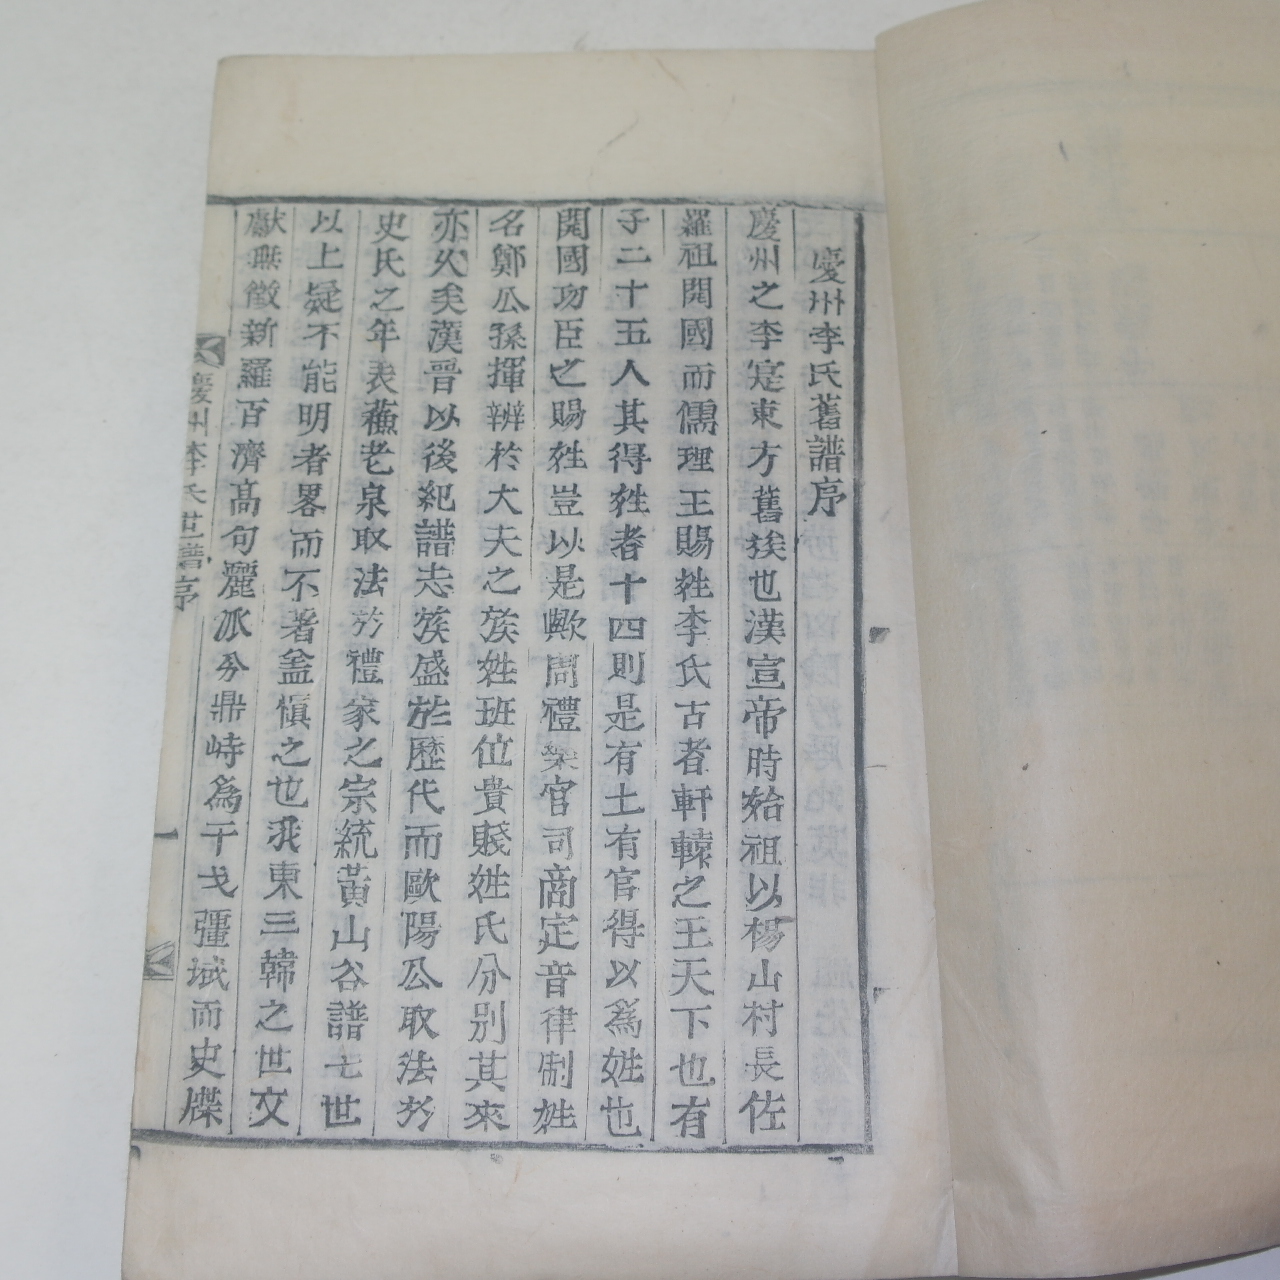 1925년(을축보) 목활자본 경주이씨세보(慶州李氏世譜) 14책